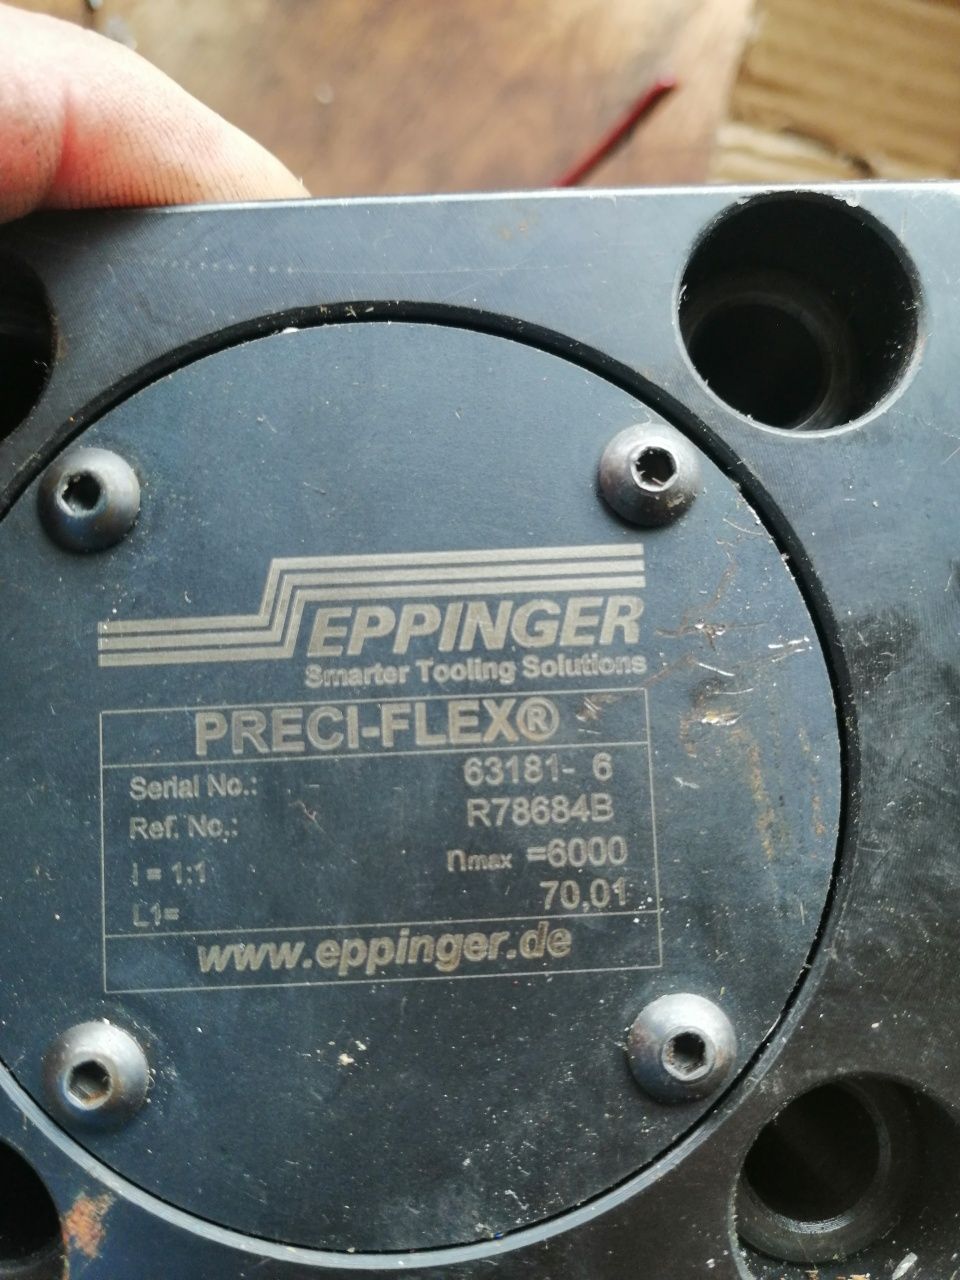 Eppinger  preciflex държач за стругови и обработващи центрове с ЦПУ